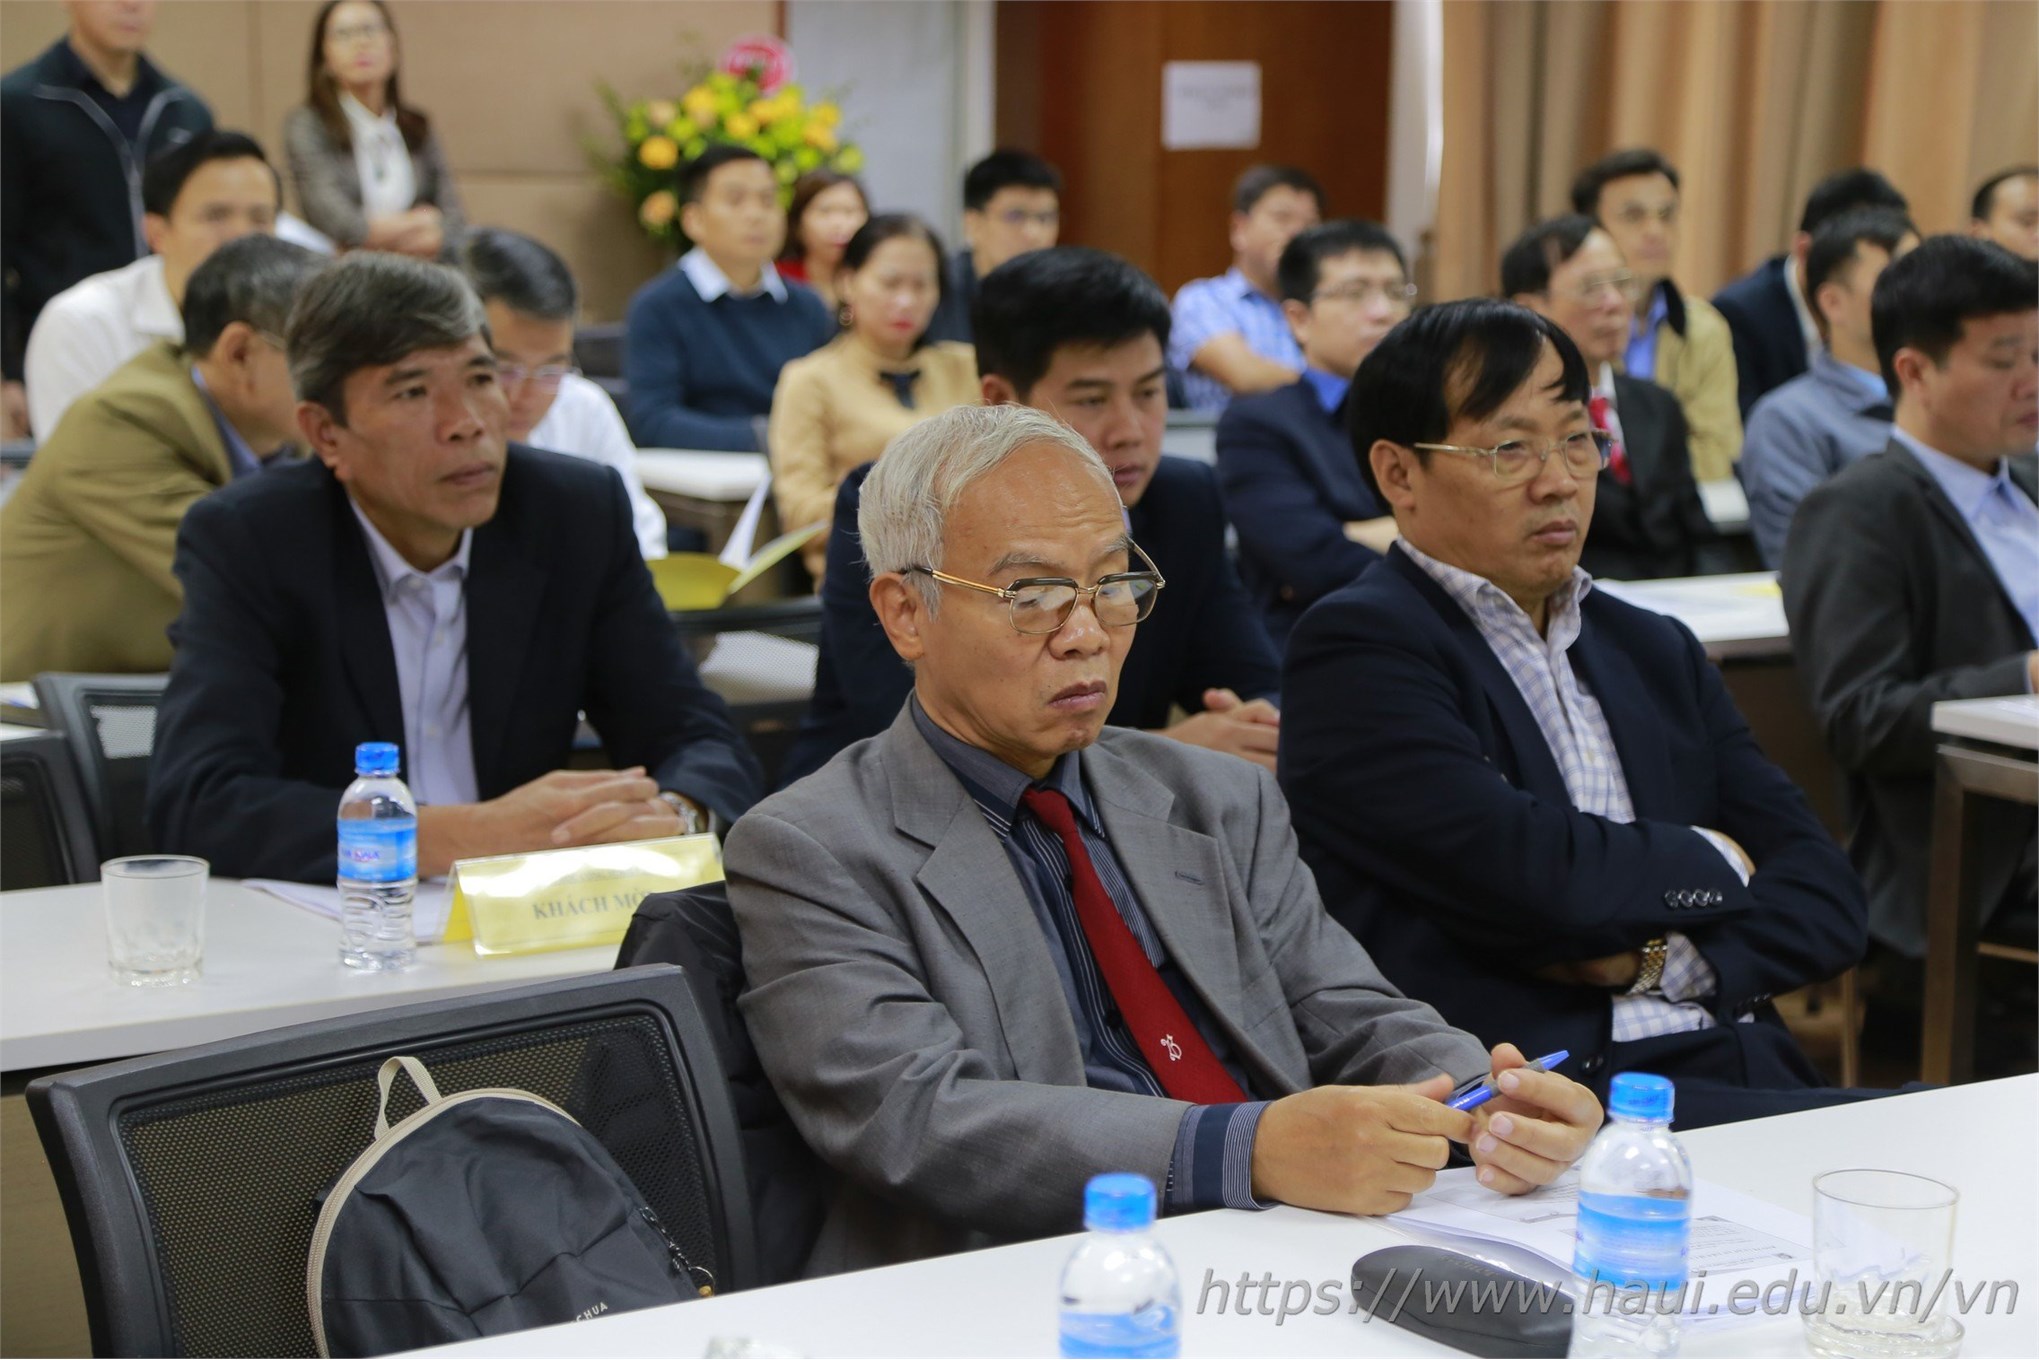 Trường Đại học Công nghiệp Hà Nội Tổ chức bảo vệ luận án tiến sĩ cấp trường cho NCS Nguyễn Văn Đức, chuyên ngành Kỹ thuật Cơ khí, mã số 9520103.